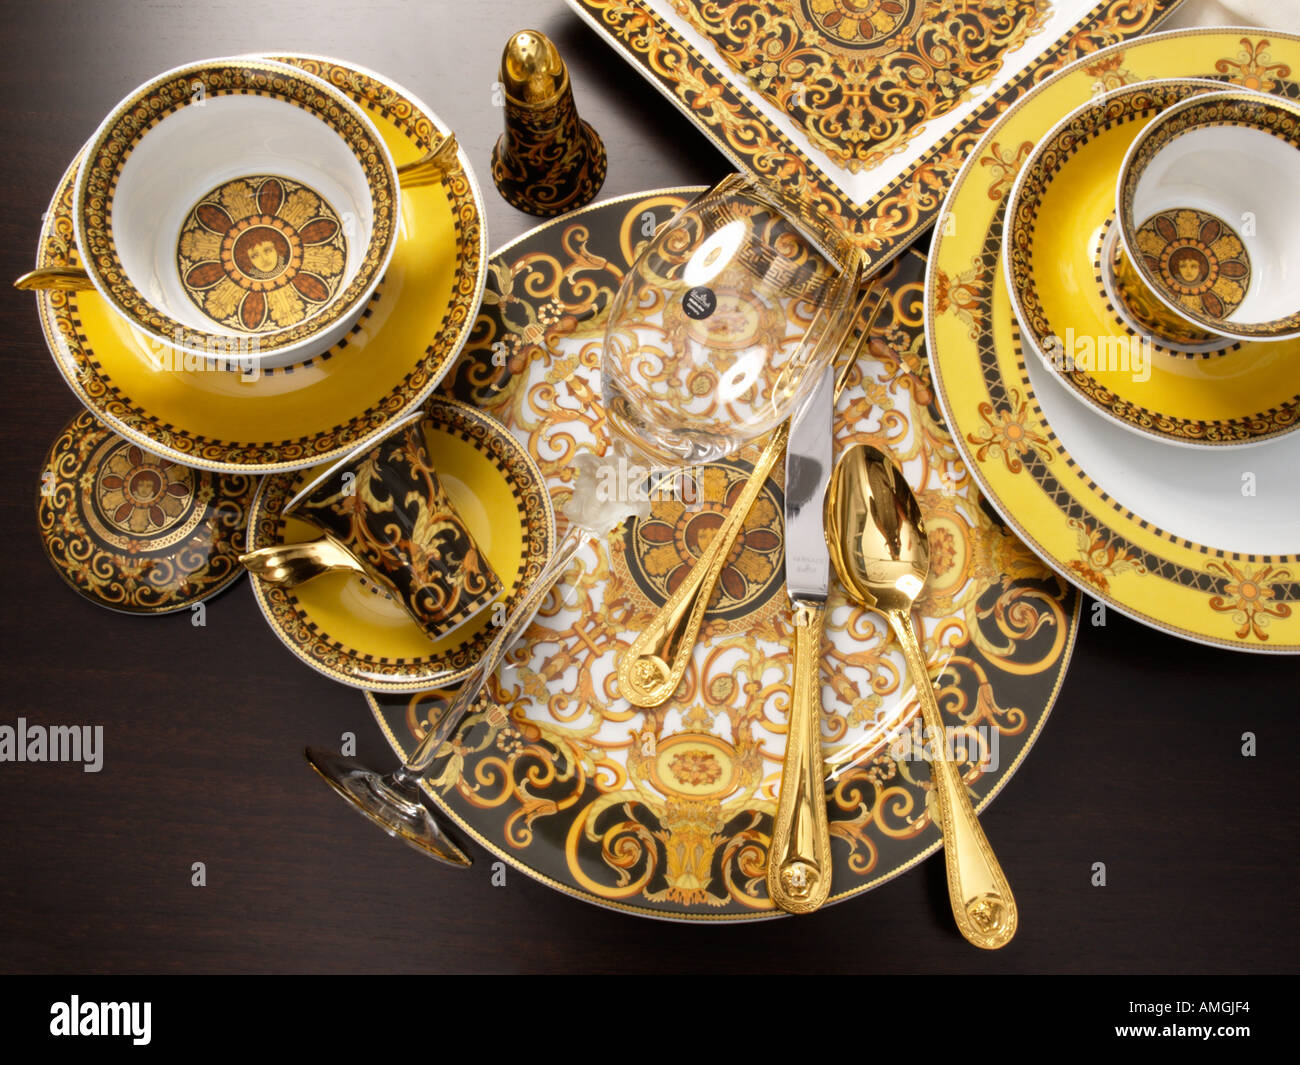 Versace entworfen Tafelservice Geschirr Gläser Schalen von Rosenthal mit  gold Versace Besteck Geschirr Stockfotografie - Alamy